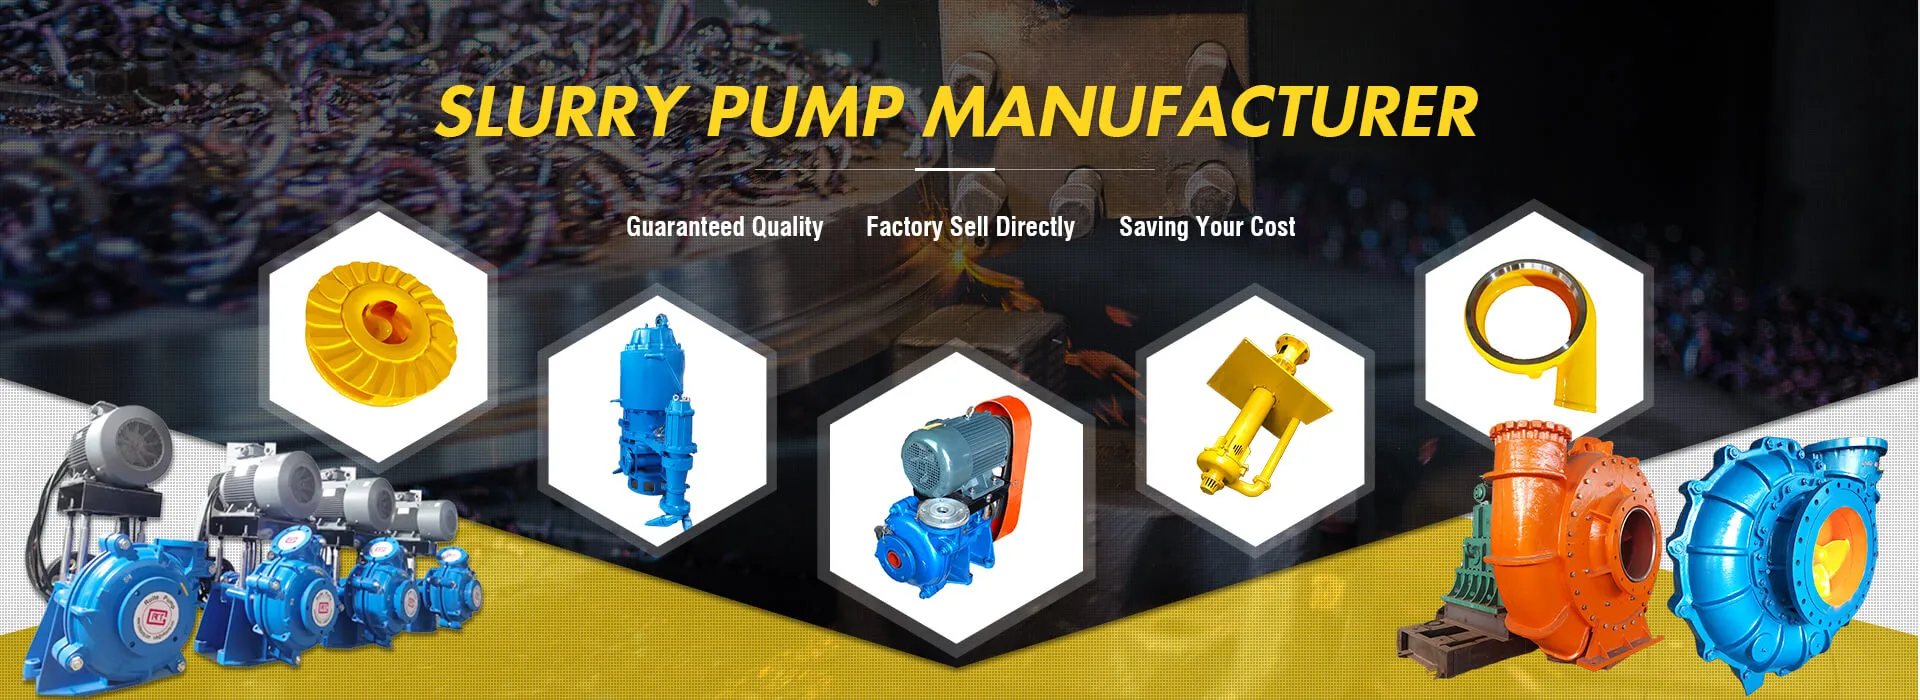 Slurry pump manufacturer